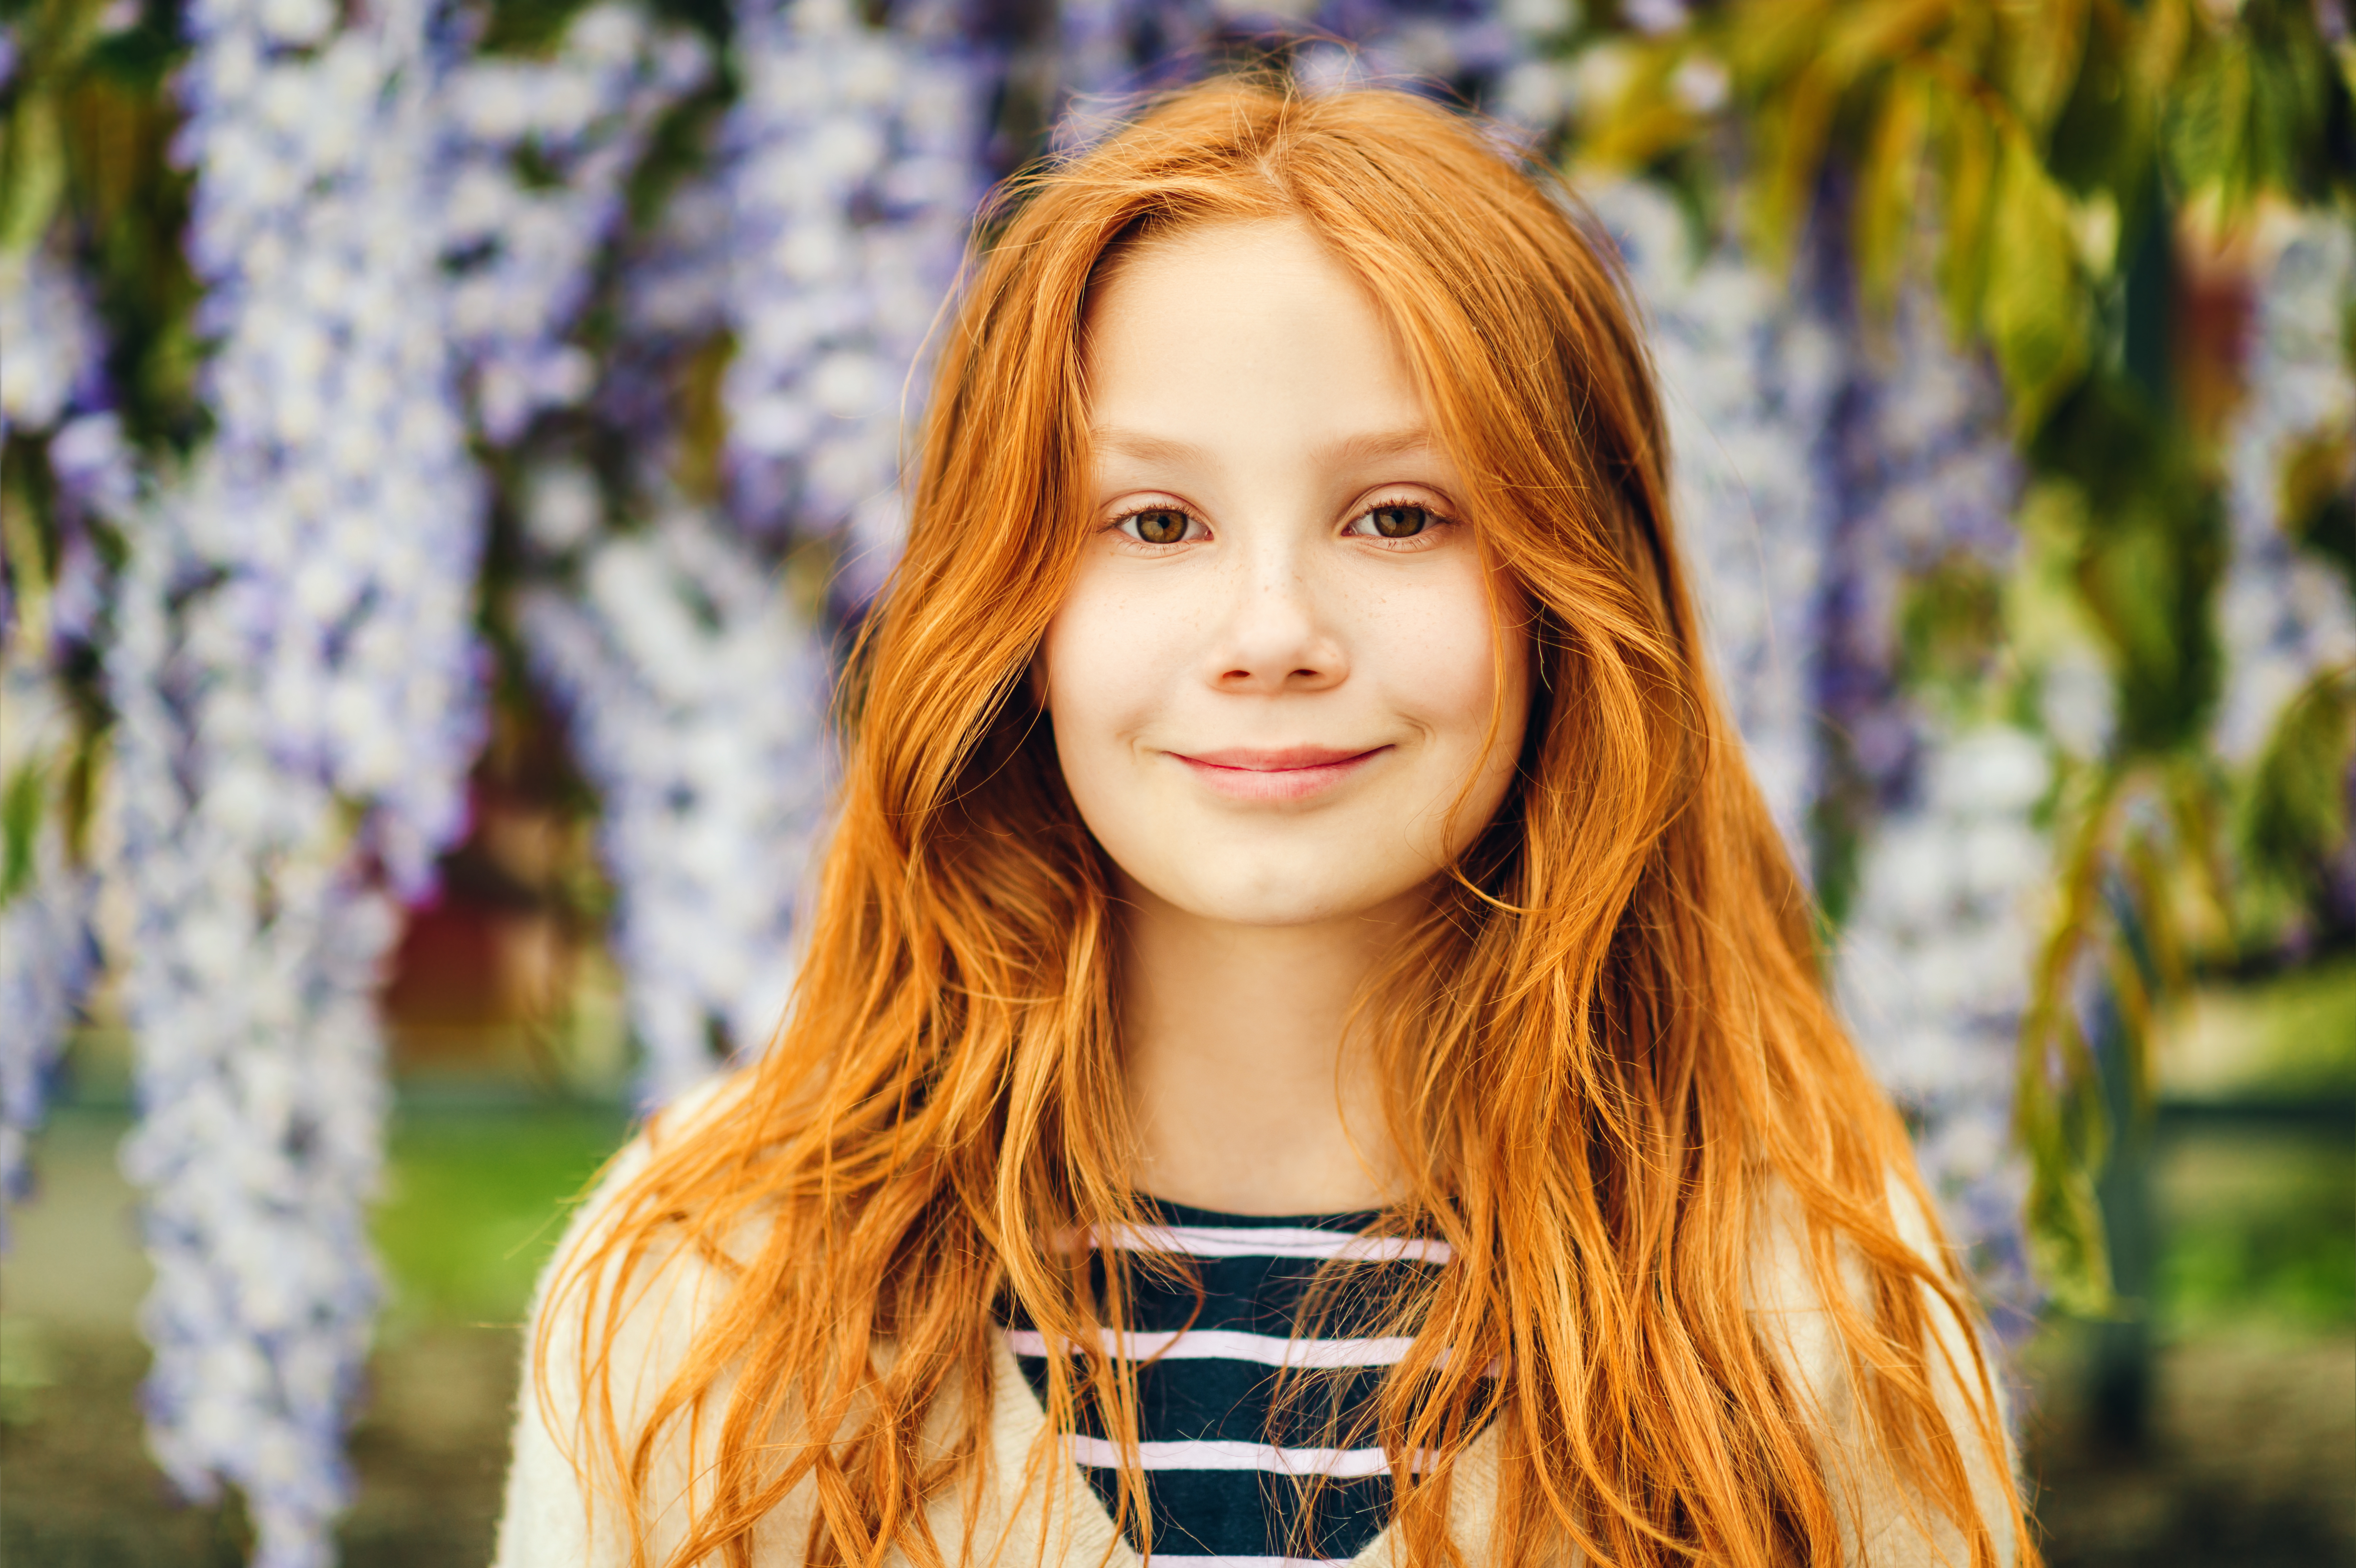 Una chica sonriendo delante de un árbol de glicinas. | Foto: Shutterstock